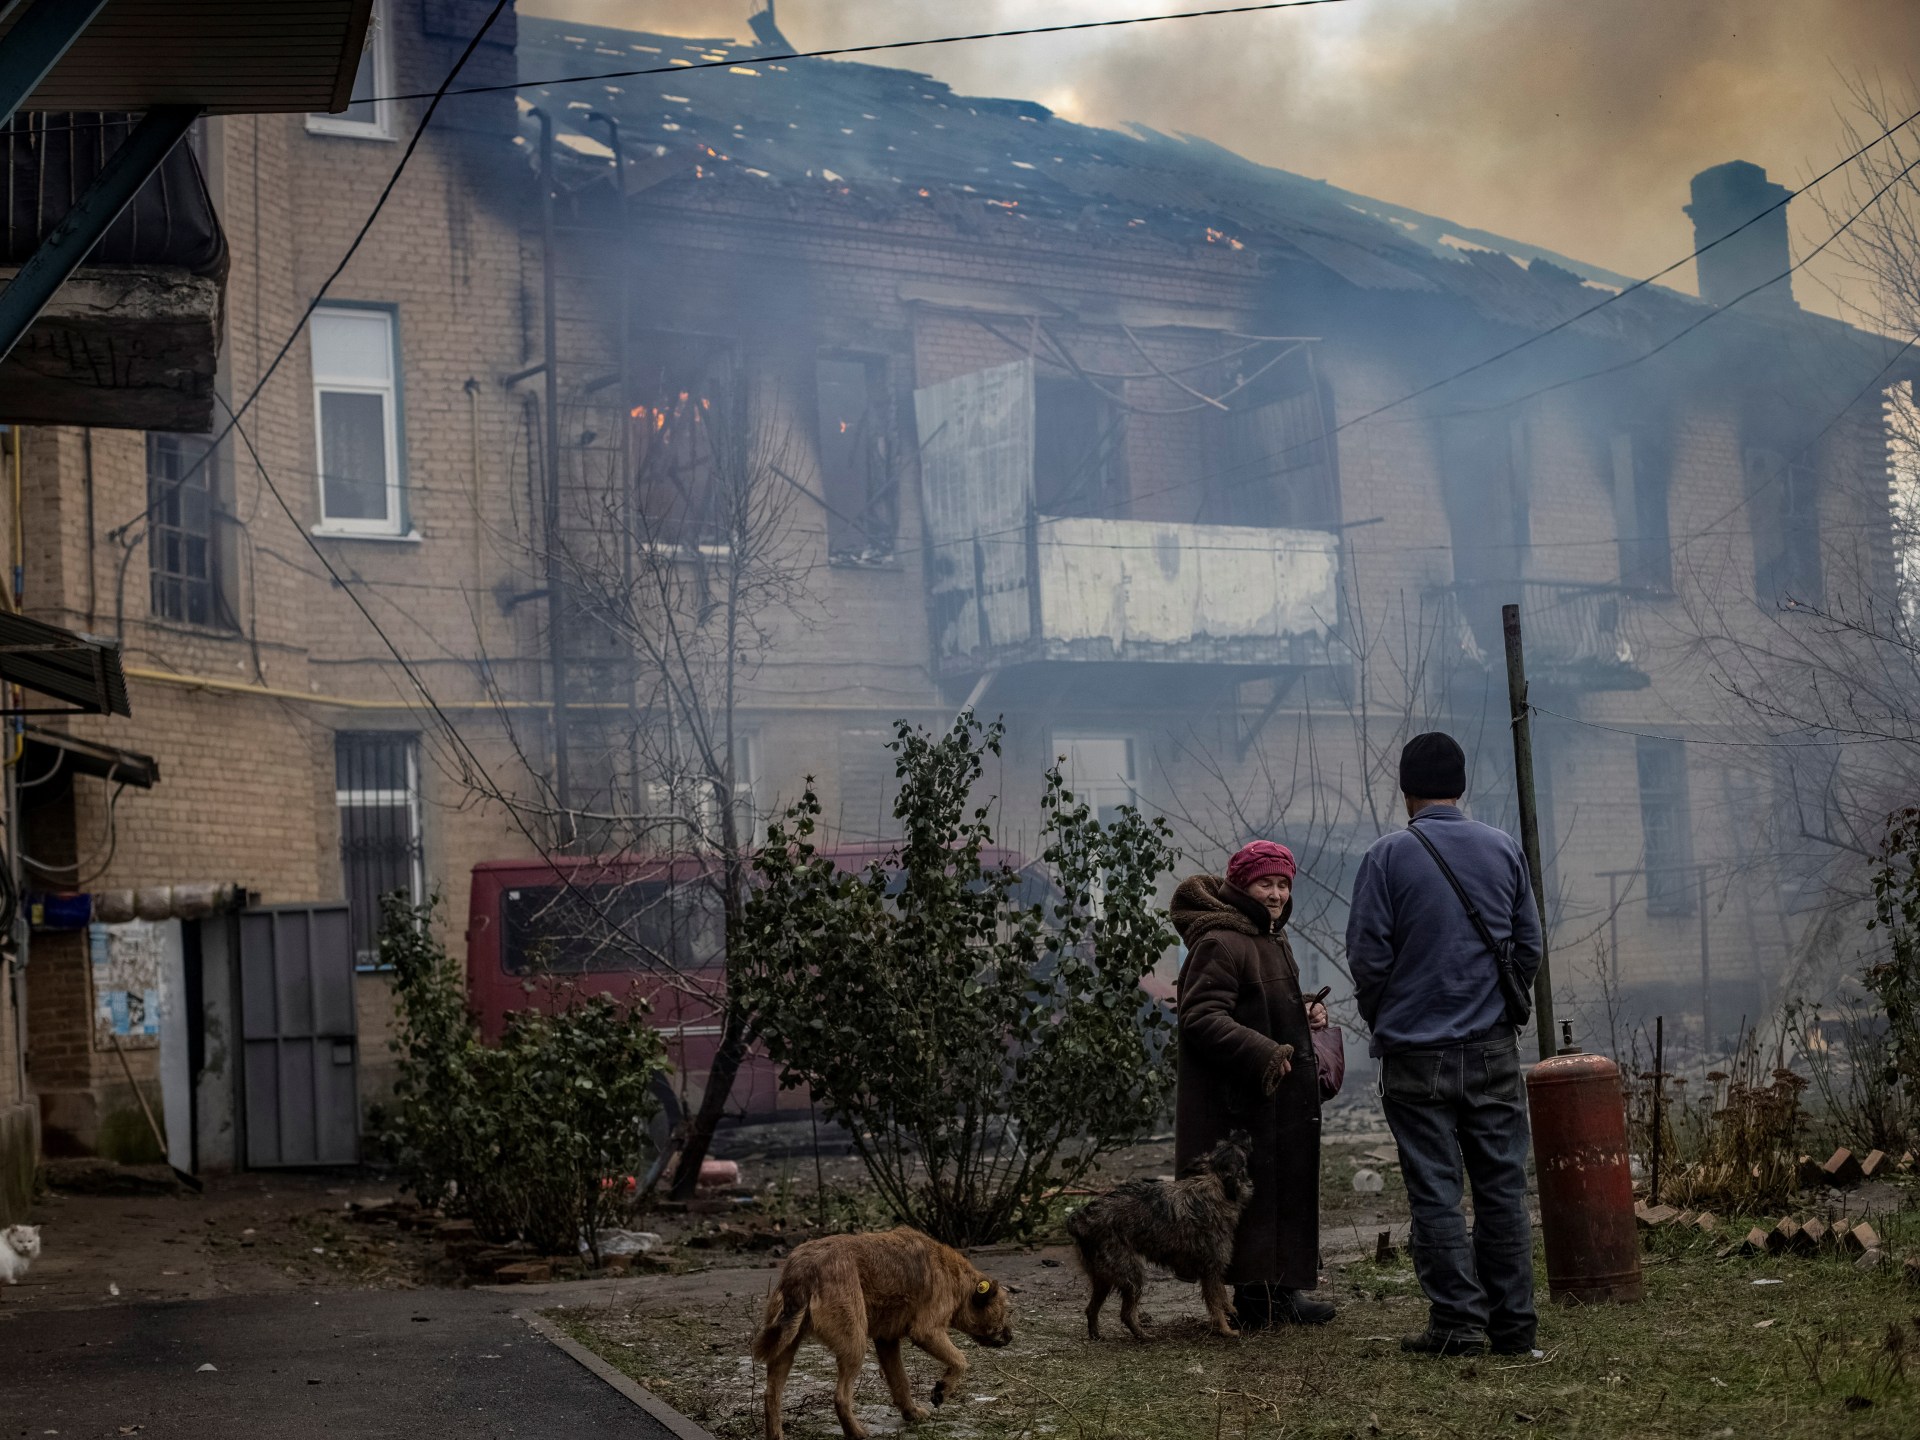 يقول زيلينسكي إن روسيا حولت مدينة أخمات إلى “خراب محترق”.  أخبار الحرب بين روسيا وأوكرانيا